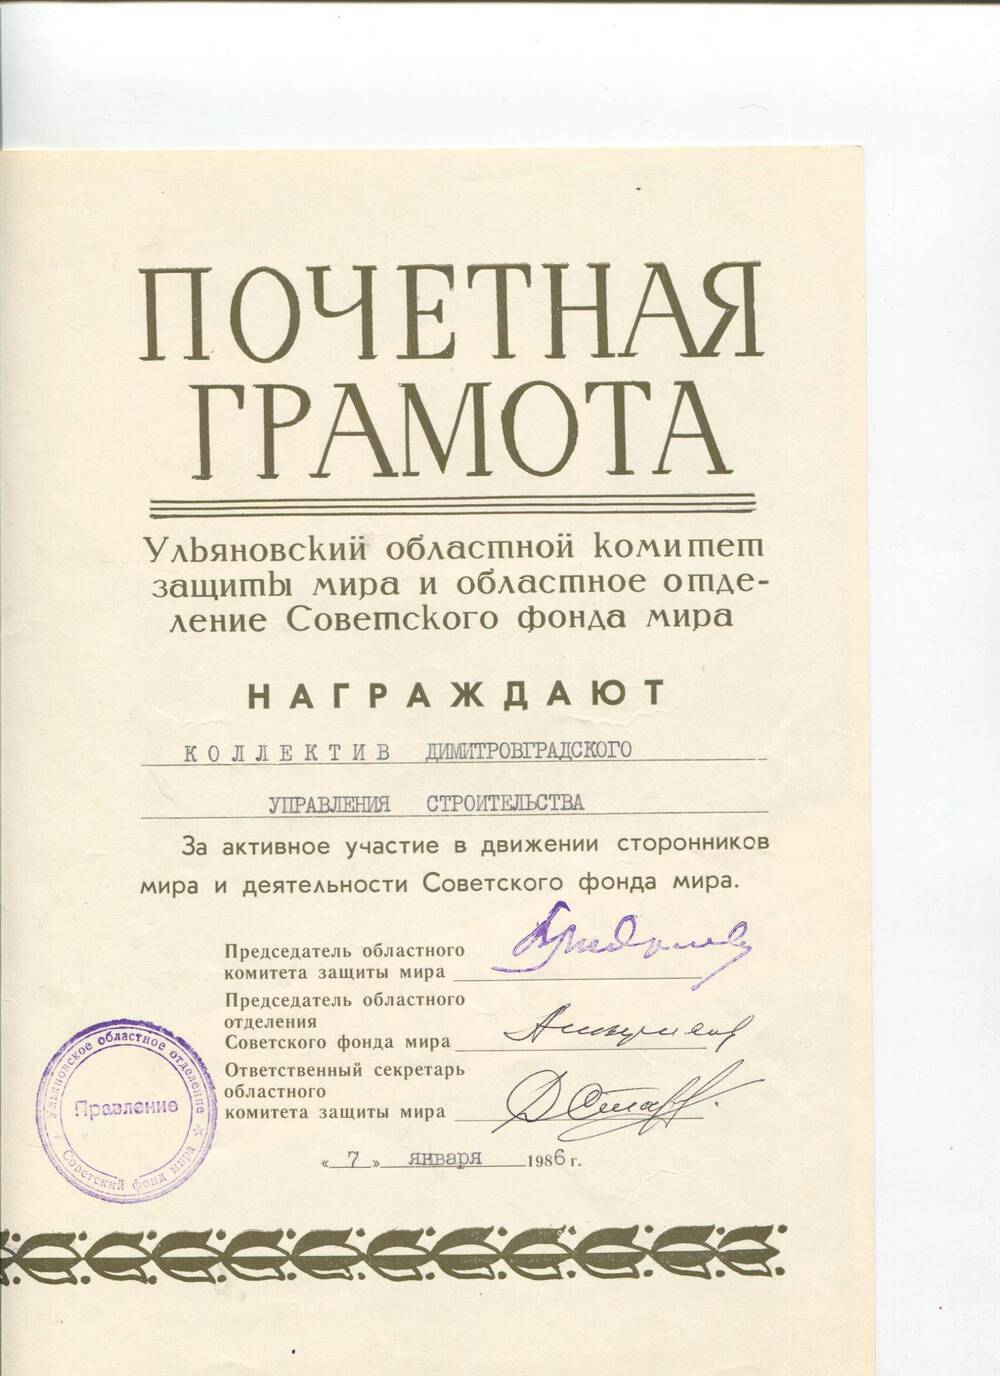 Почетная грамота ДУС от фонда мира. г.Ульяновск, 07.01.1986 г.